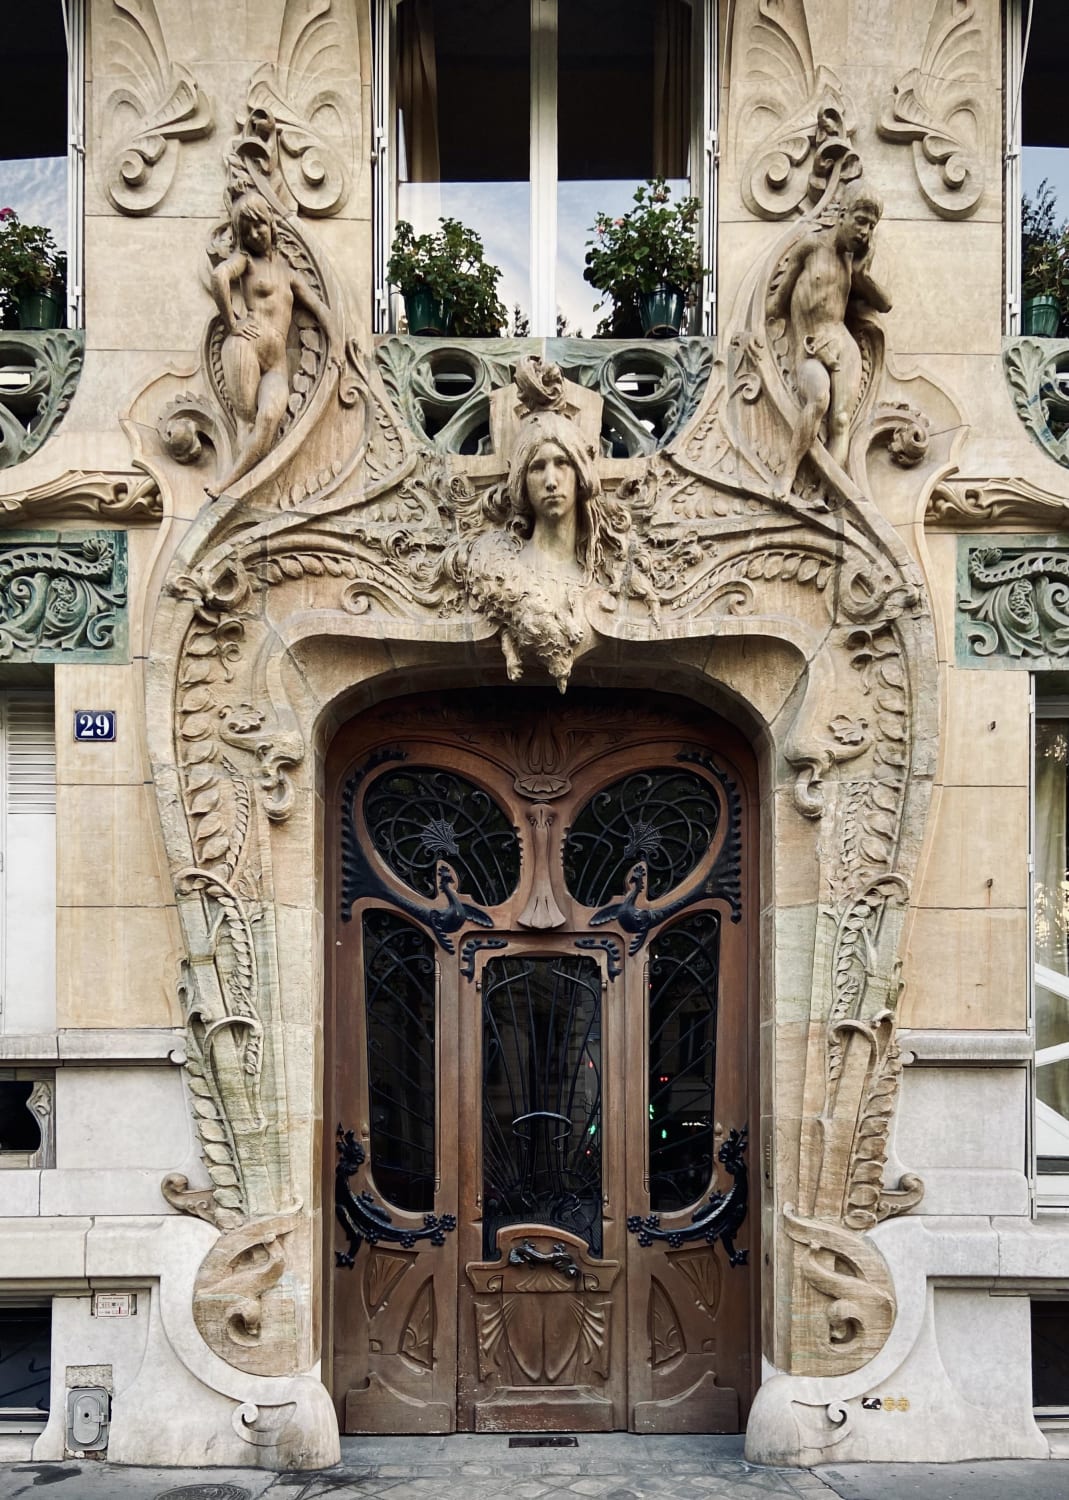 Paris, France (7th Arrondissement. Avenue Rapp)